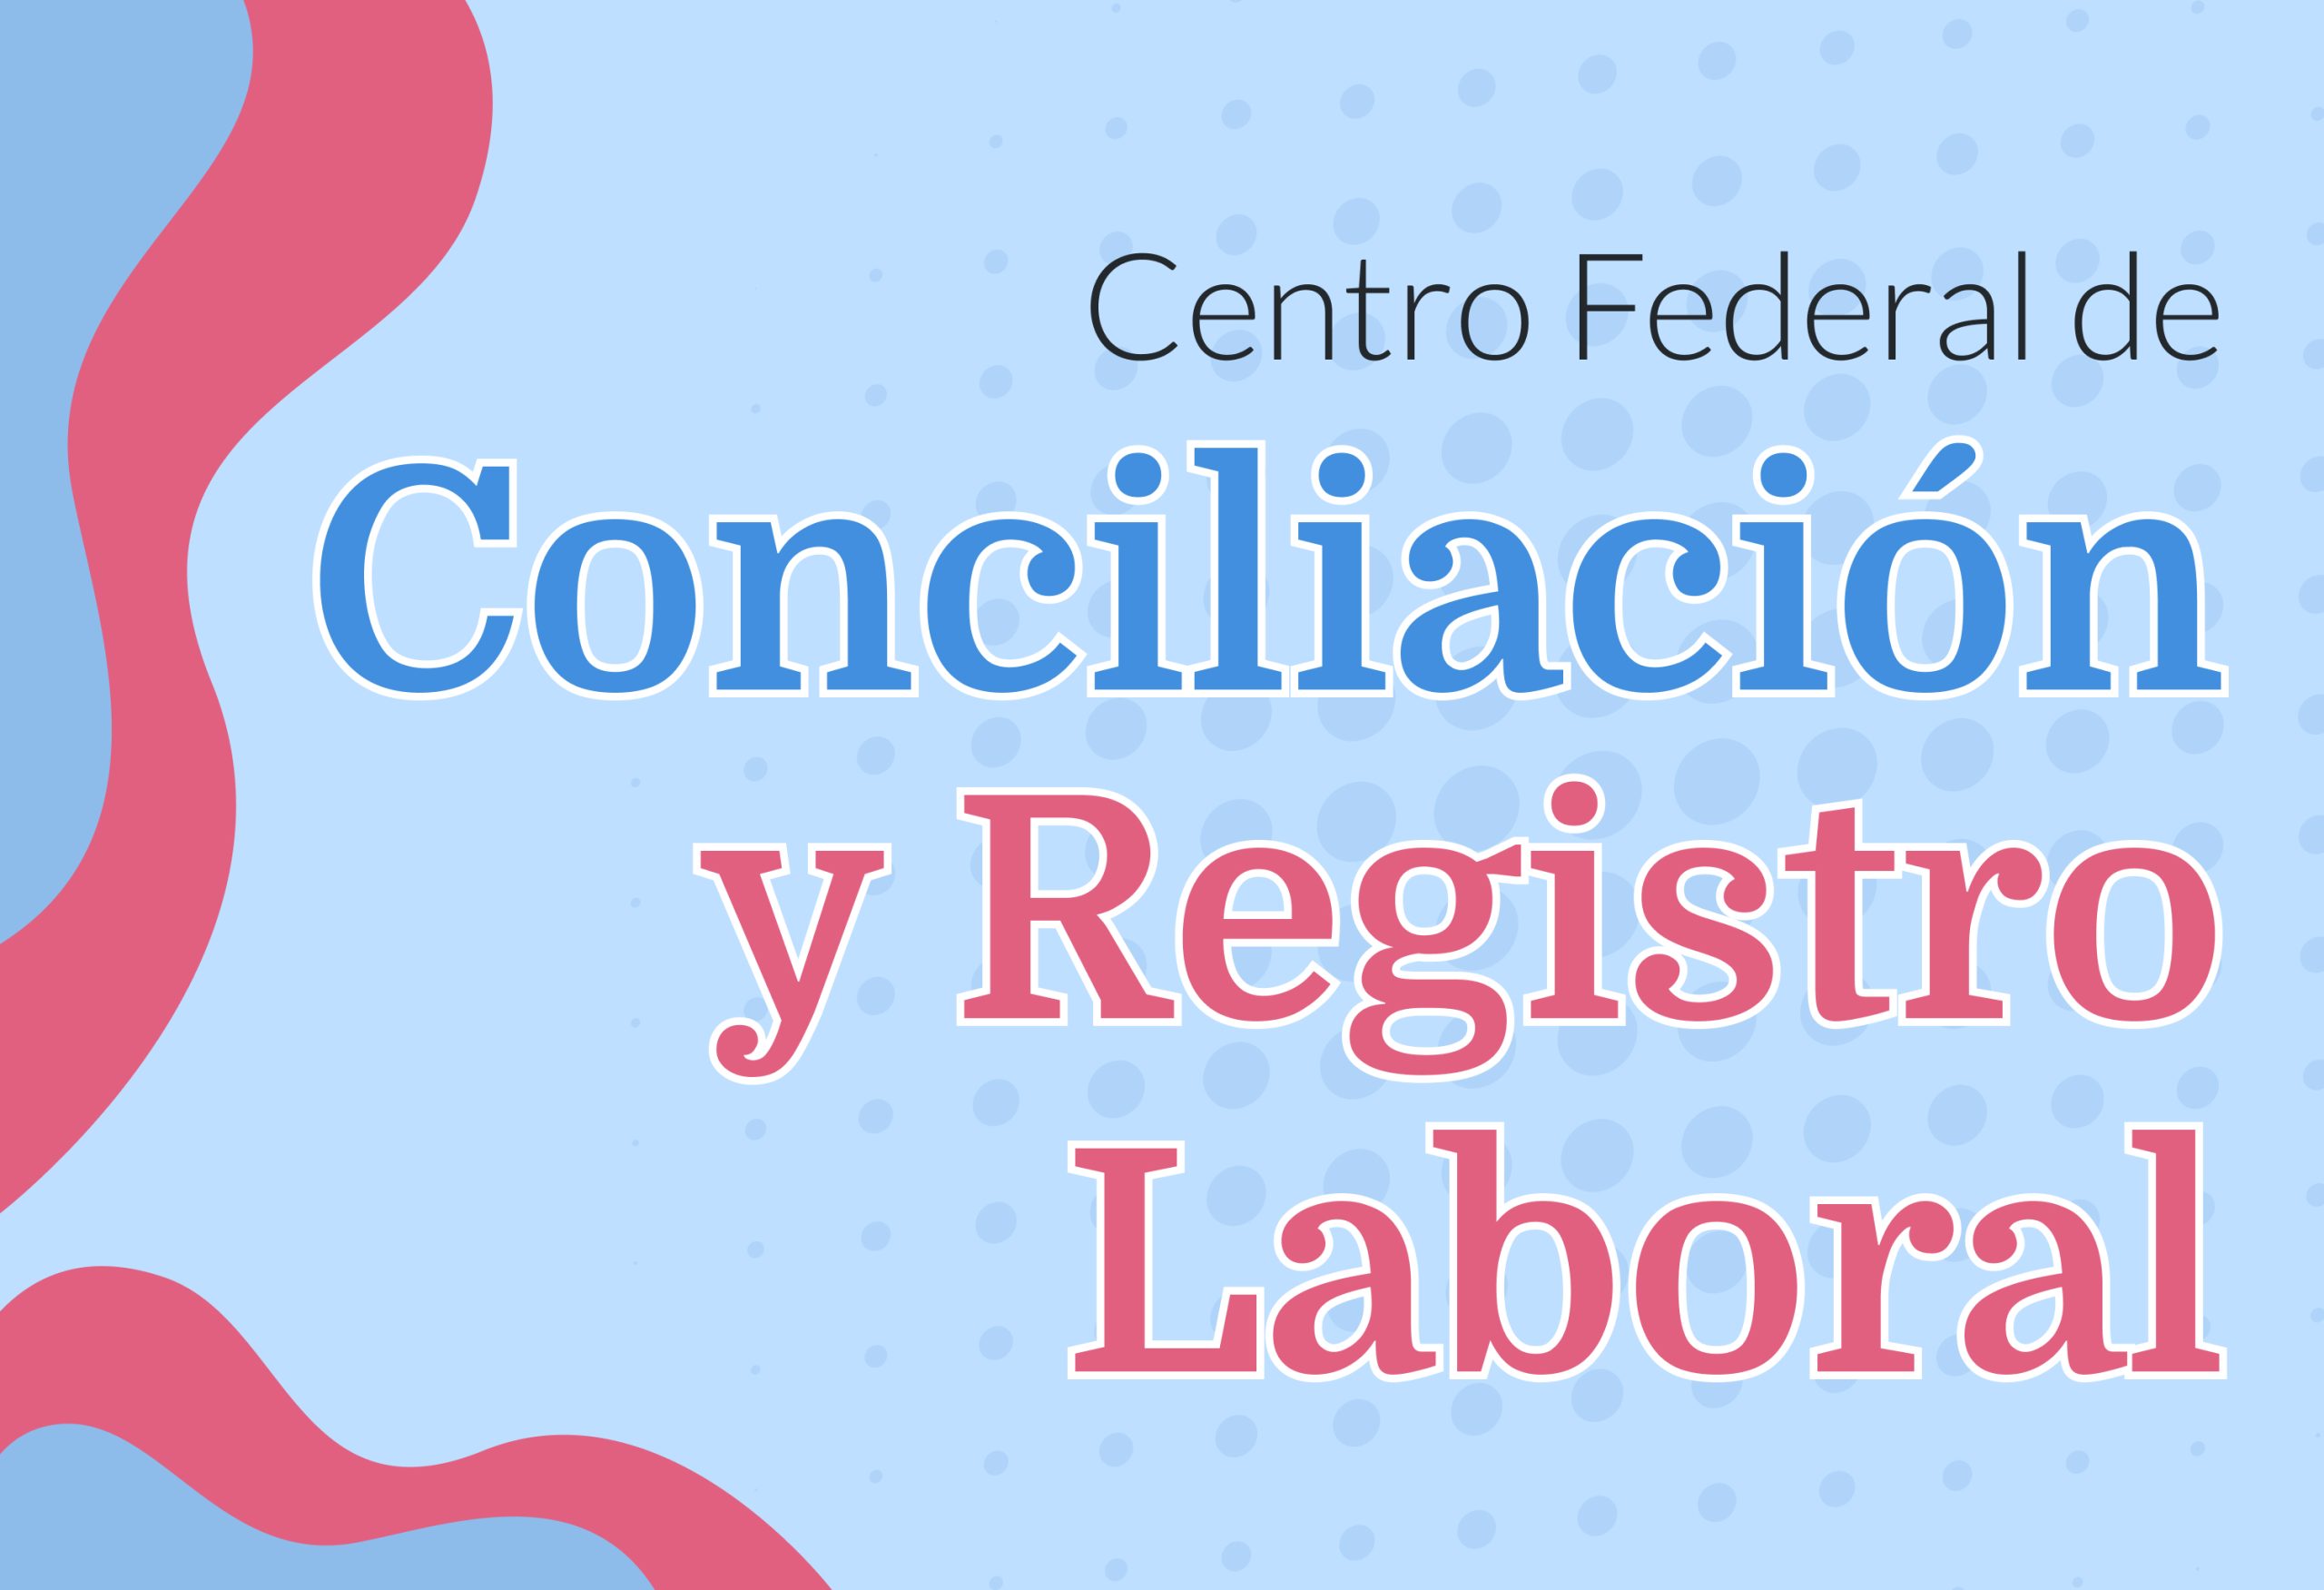 Centro Federal de Conciliación y Registro Laboral